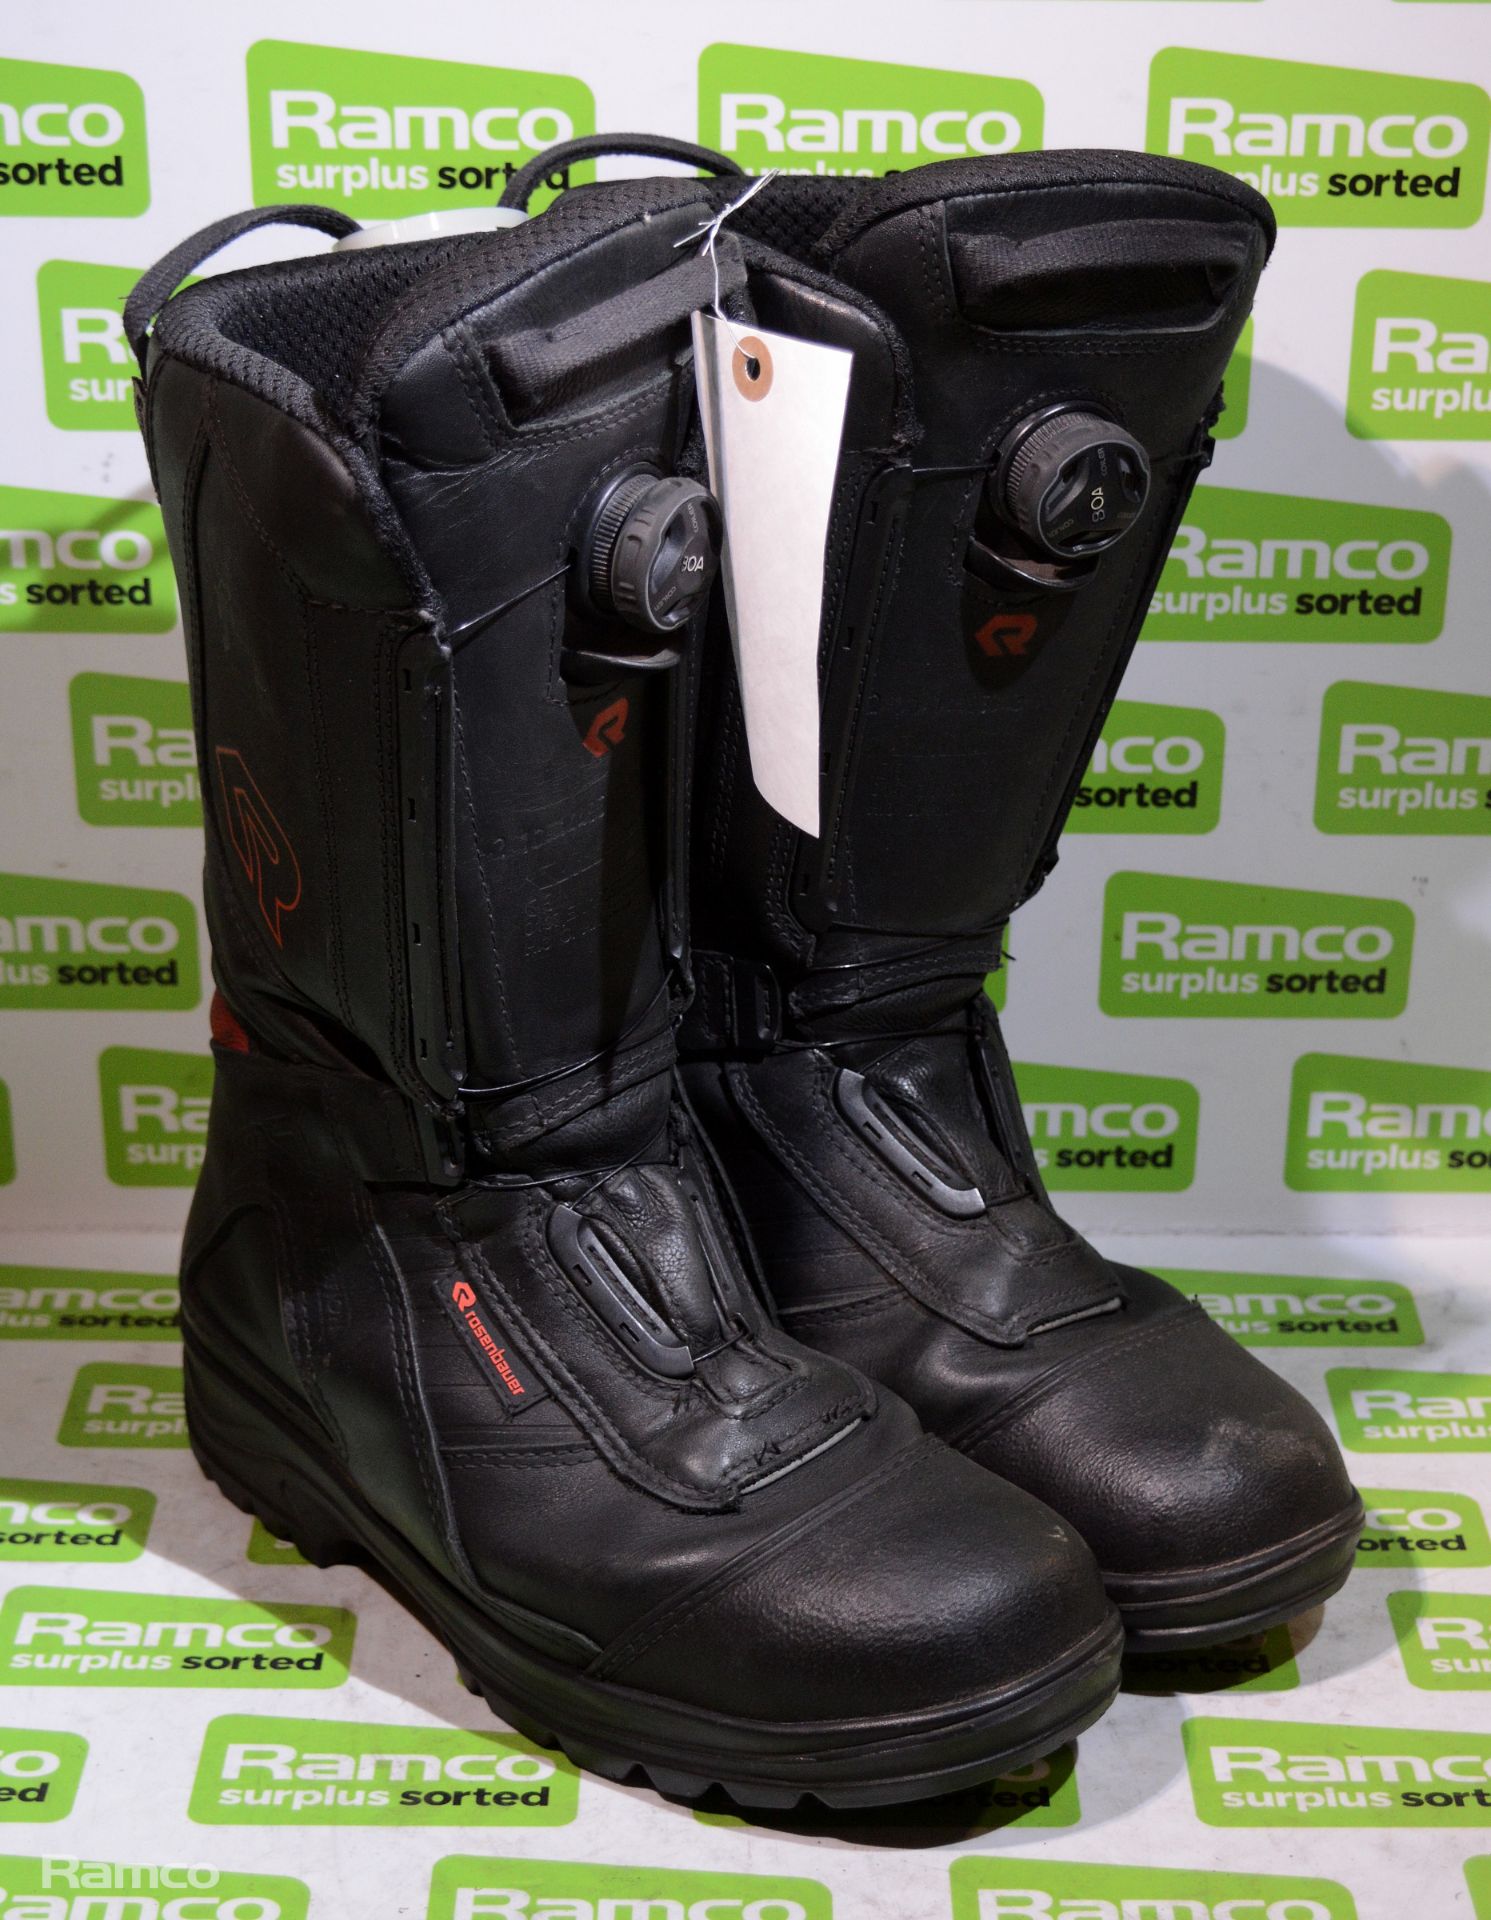 Rosenbauer Sympatex Fire & Heat Resistant Boots Pair - Size: EU 42, UK 8 - 30x30x40cm